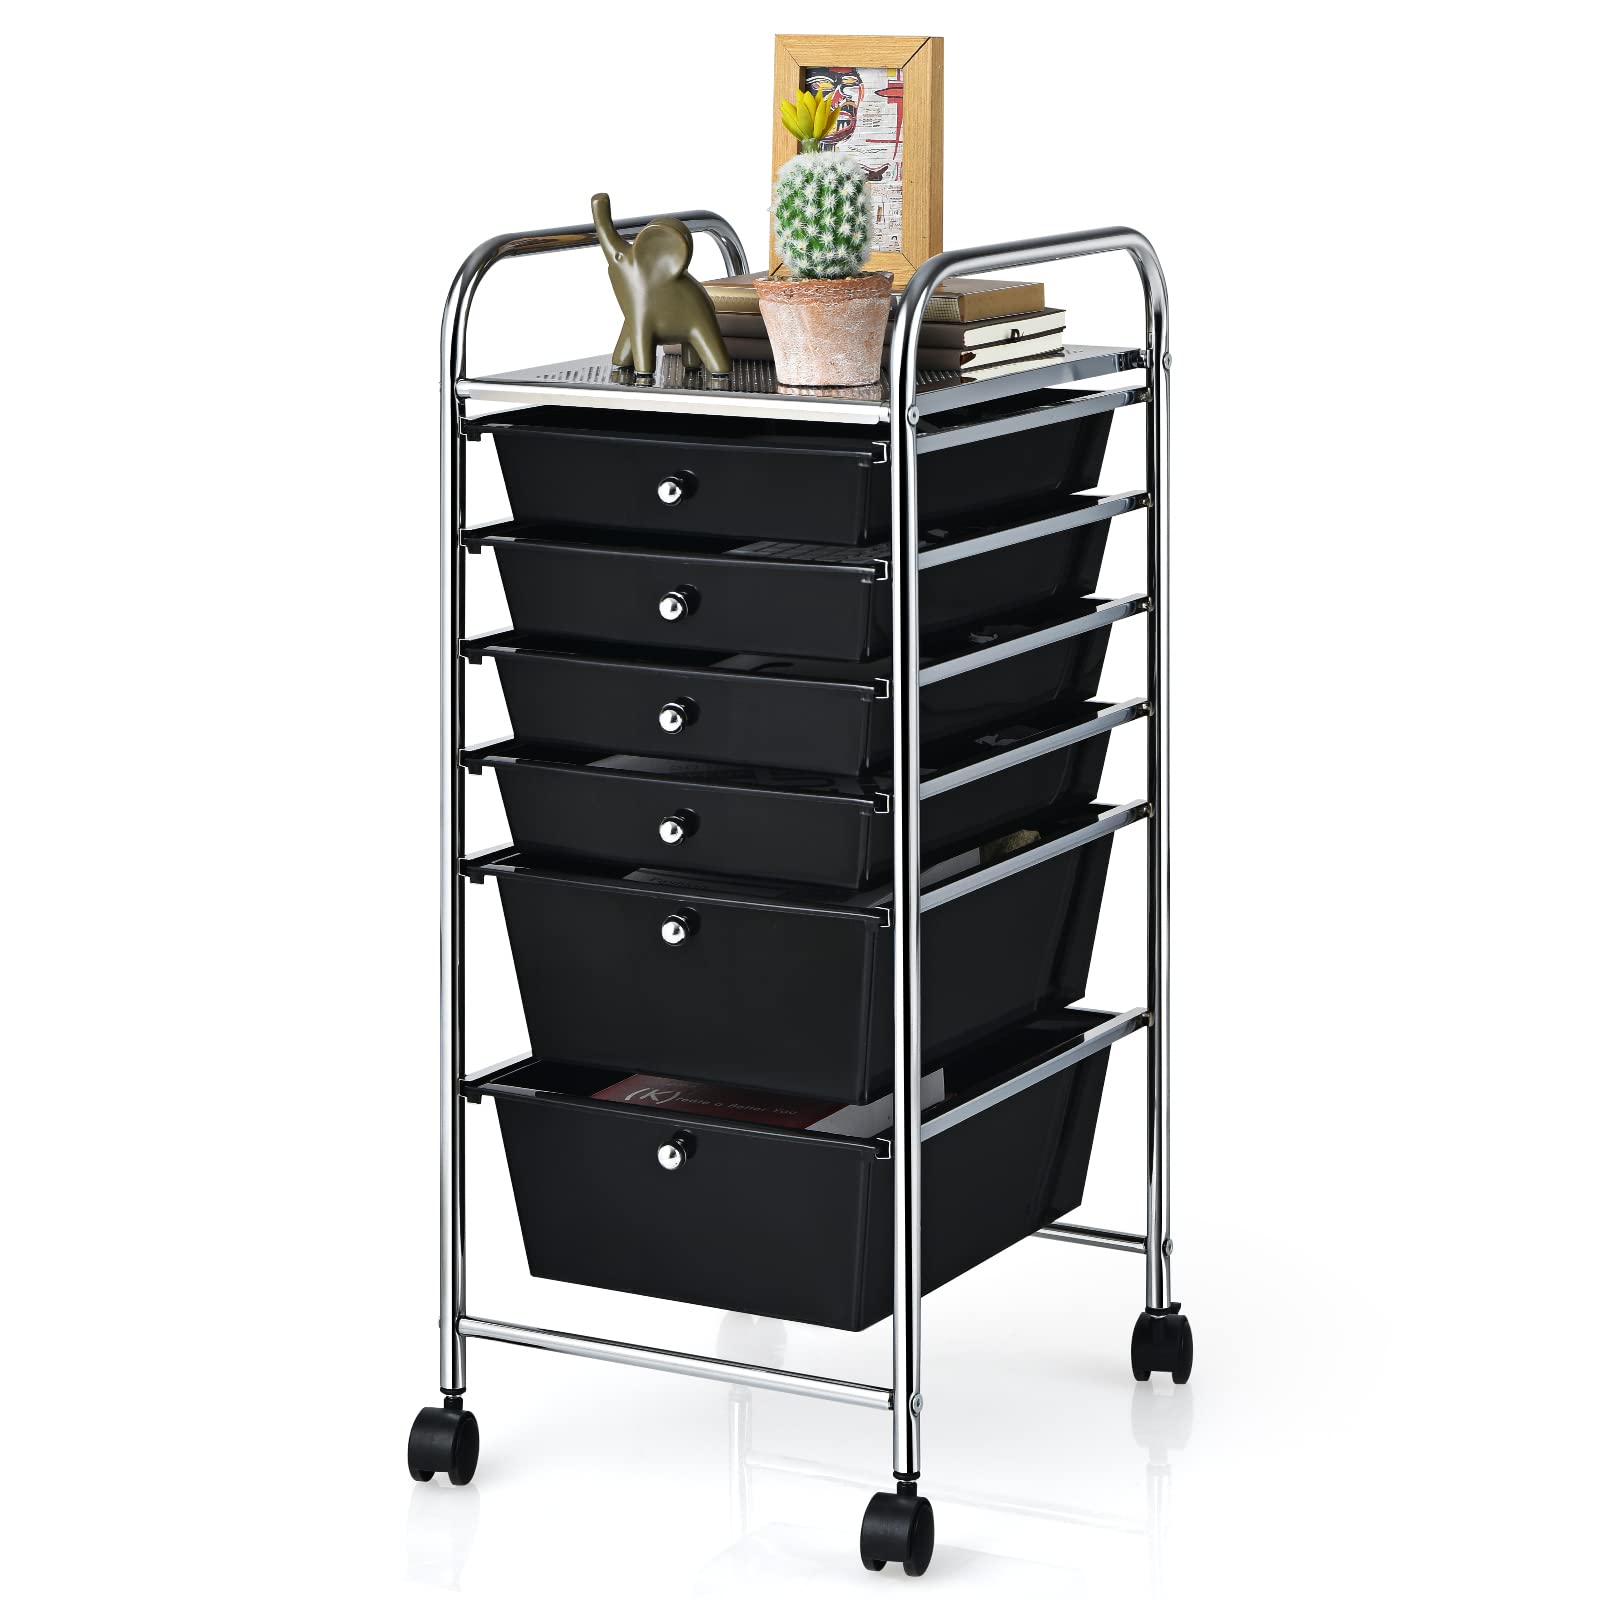  6 Storage Drawer Cart Rolling Organizer Cart, Black - Giantex